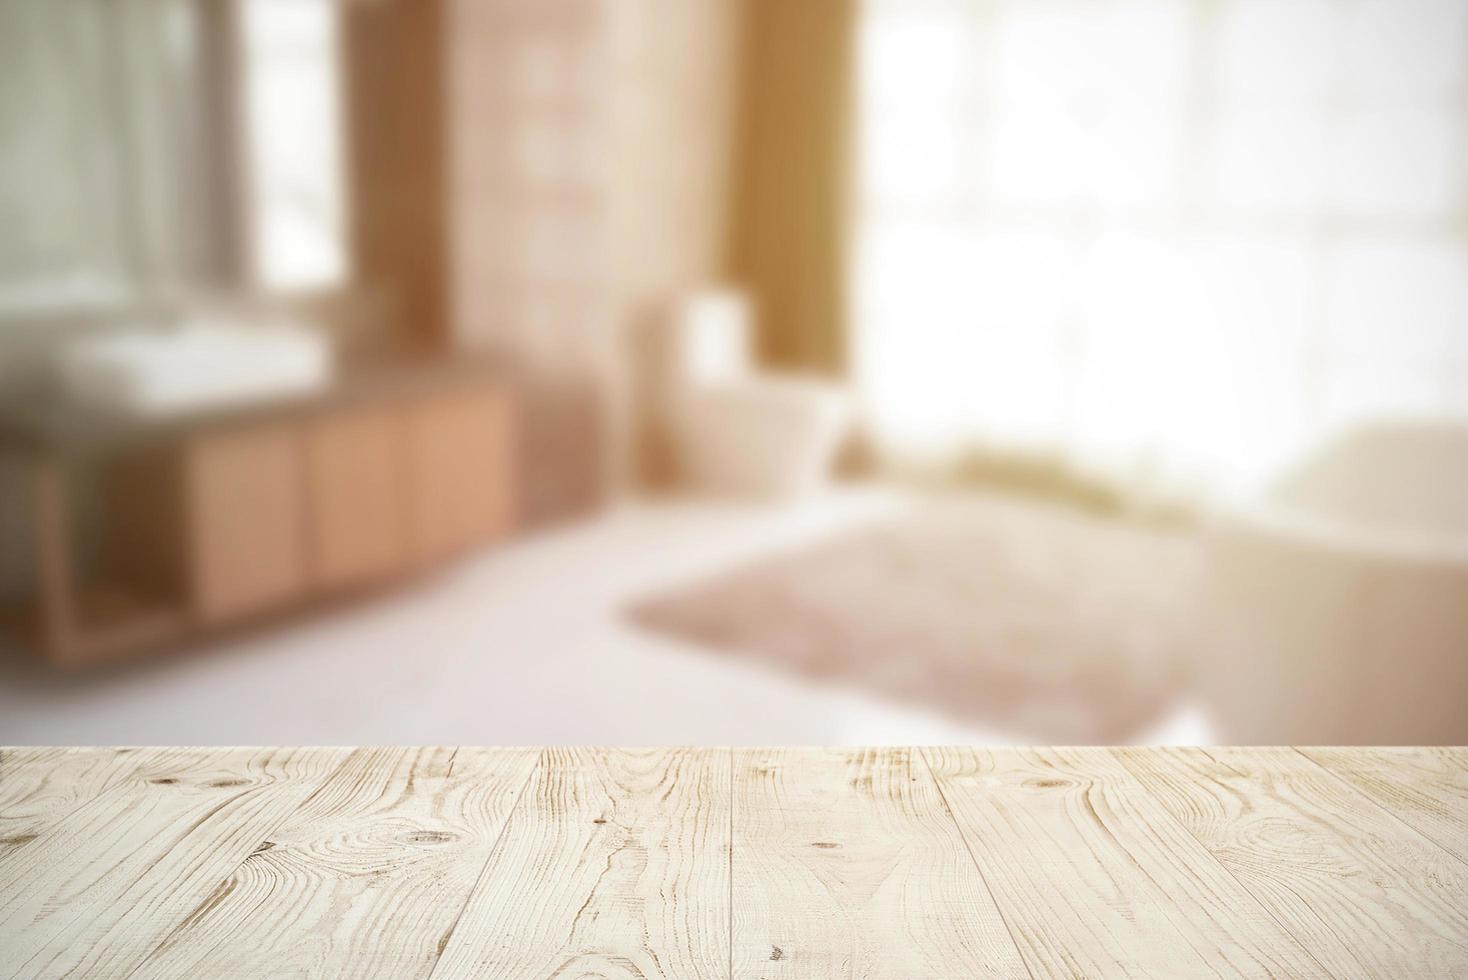 plateau de table en bois vide sur flou abstrait de l'arrière-plan intérieur de la salle de bain, pour le montage ou l'affichage du produit, maquette pour l'affichage du produit photo